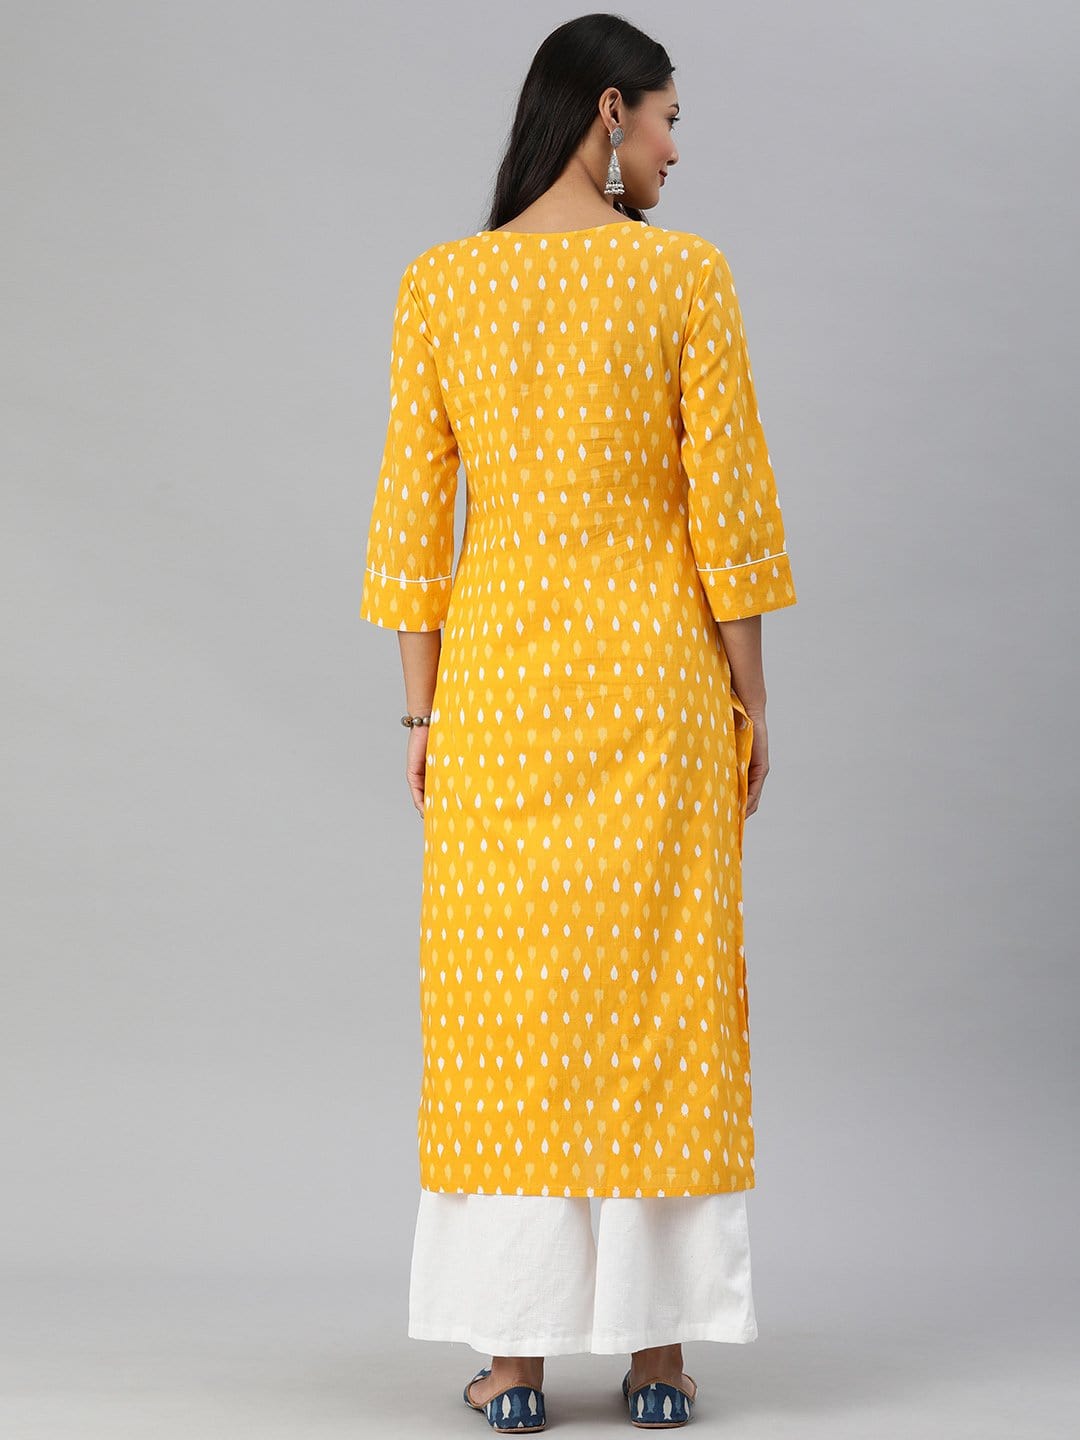 Women's KSUT Mustard And White Ikkat Printed Straight Kurta With Dori And Tassel Detailing On Neckline - Varanga